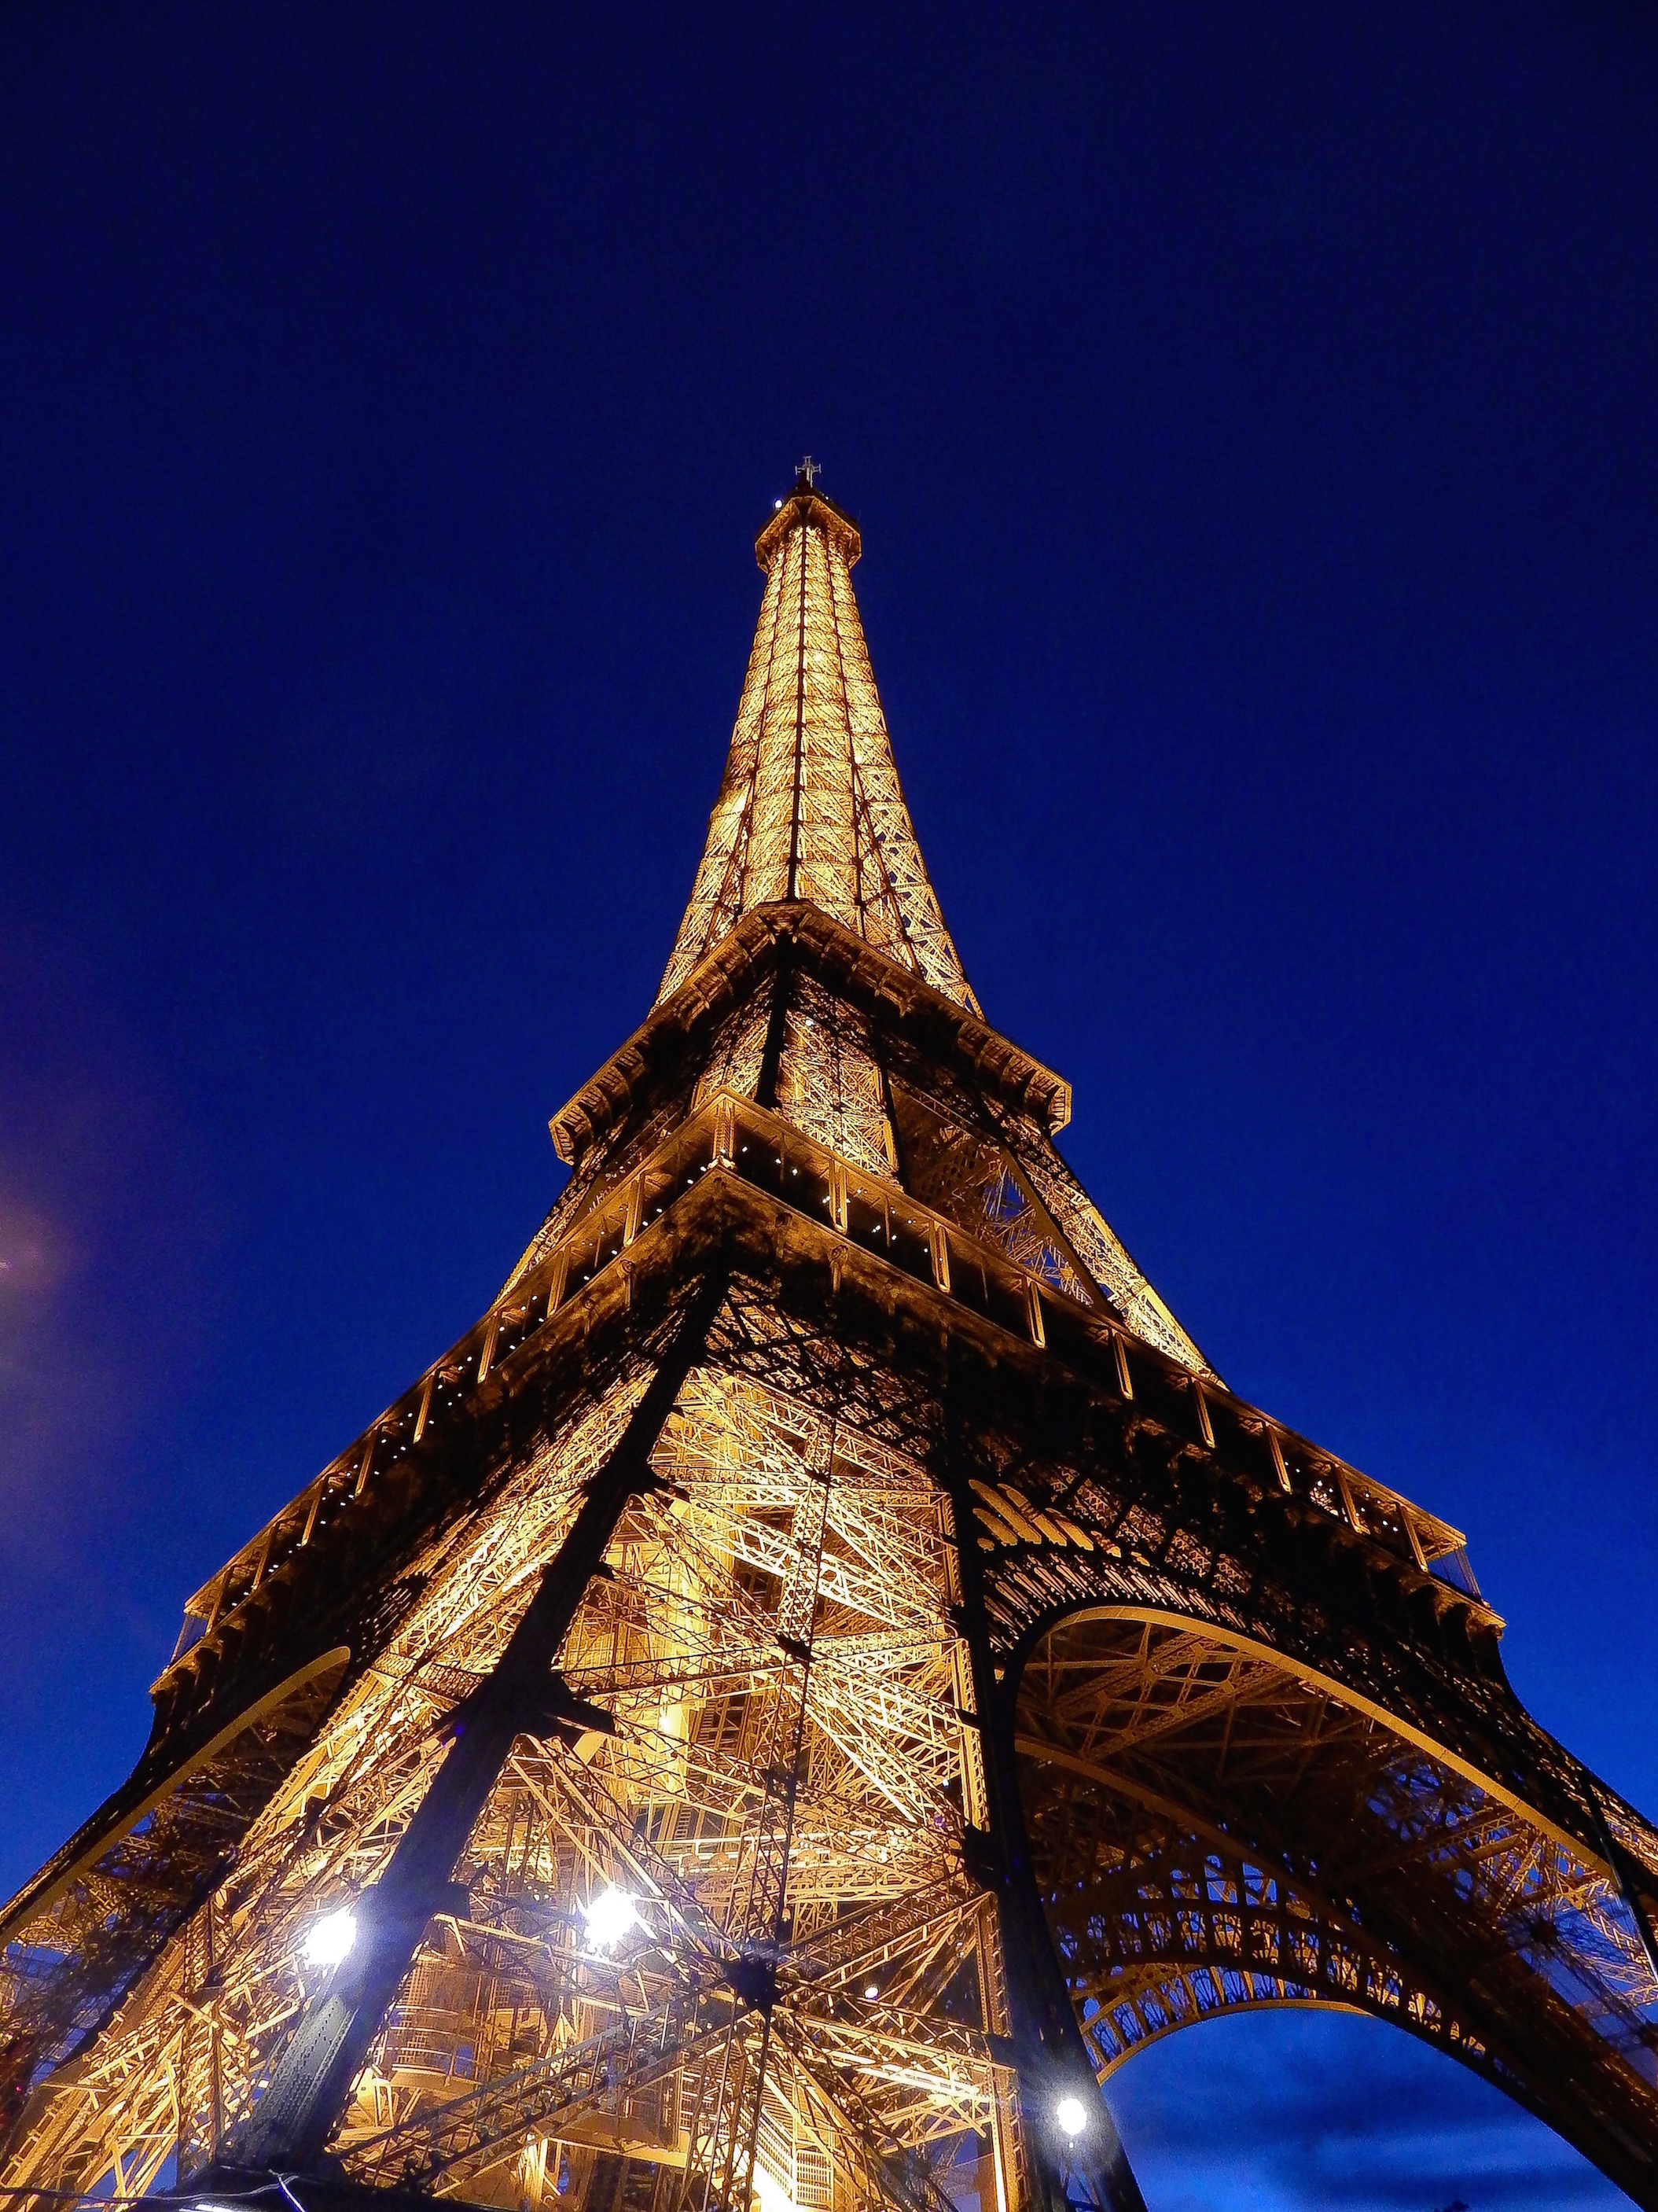 Le Tour Eiffel de Paris, almost 130 years old...just timeless